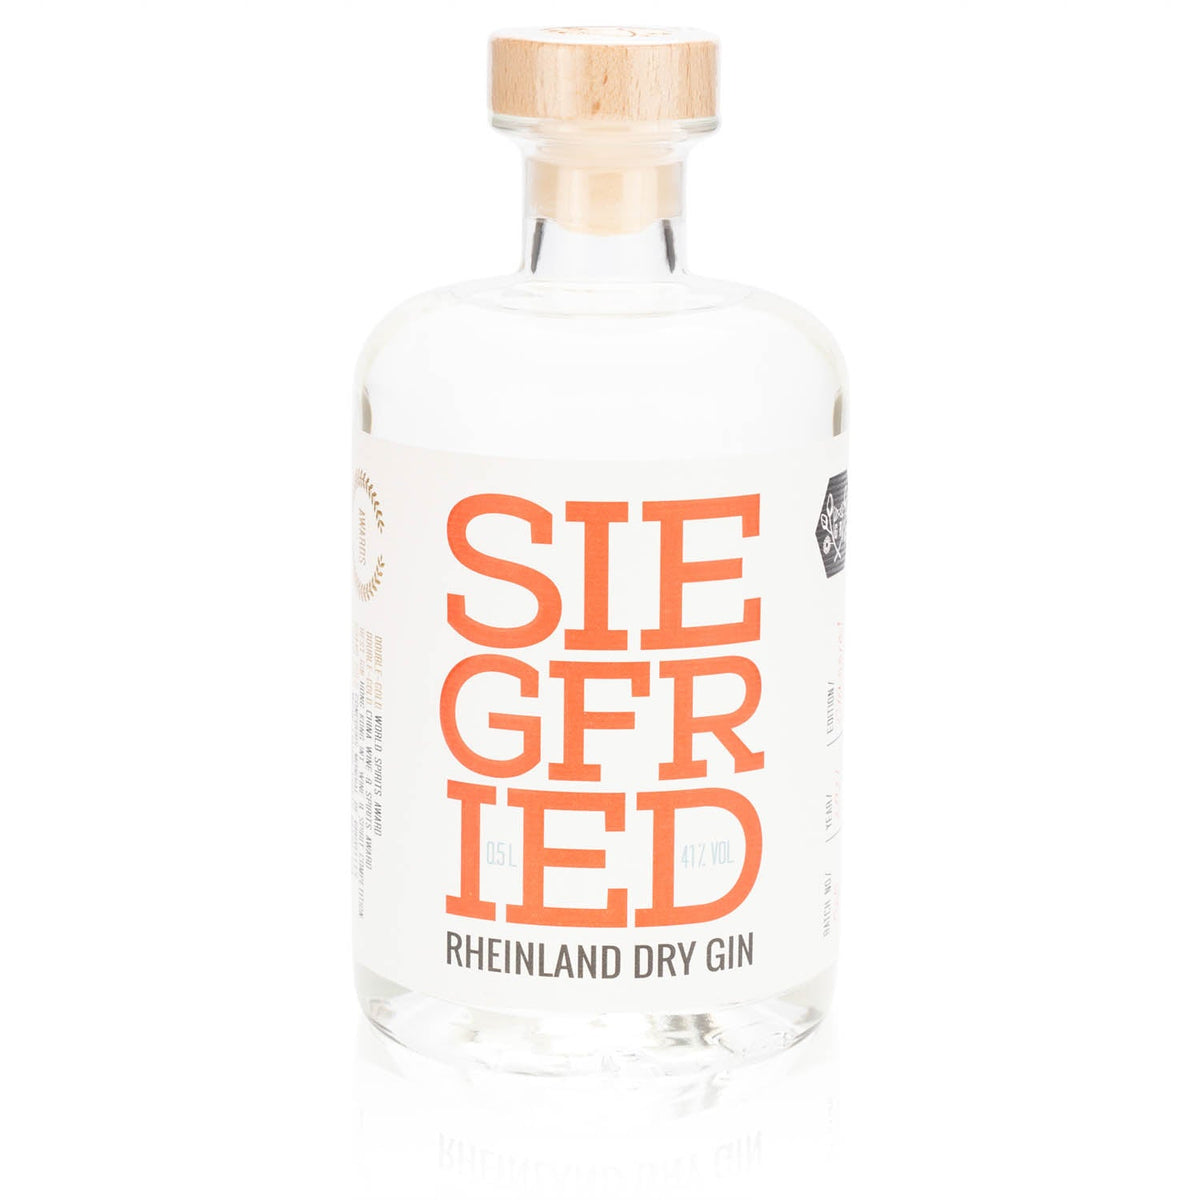 Siegfried Rheinland Dry Gin 0,5 l - 41% Vol. online kaufen | Beyond Beverage